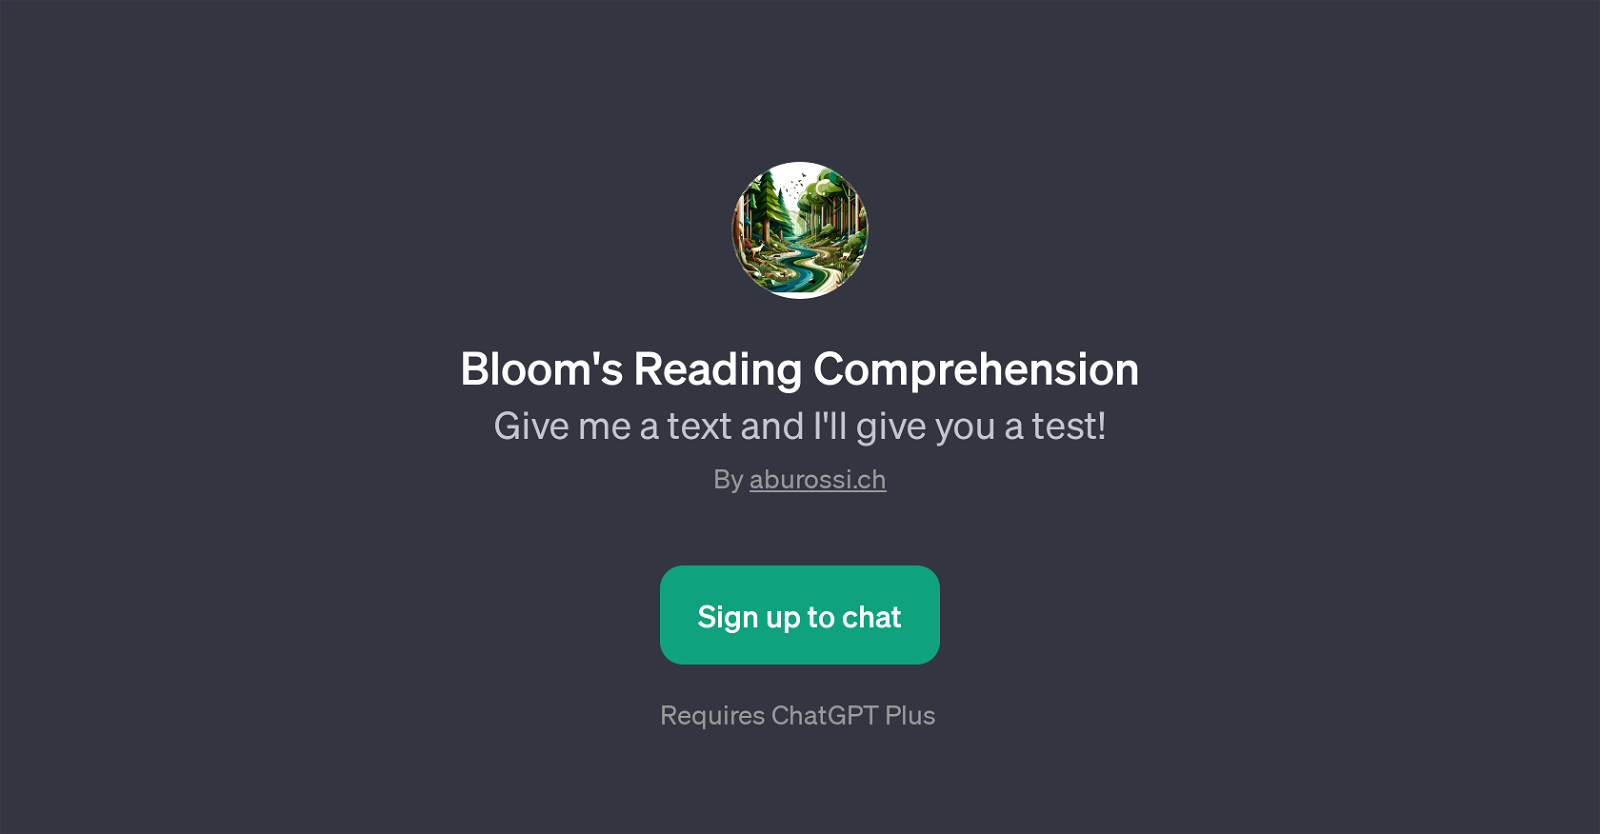 Bloom's Reading Comprehension website